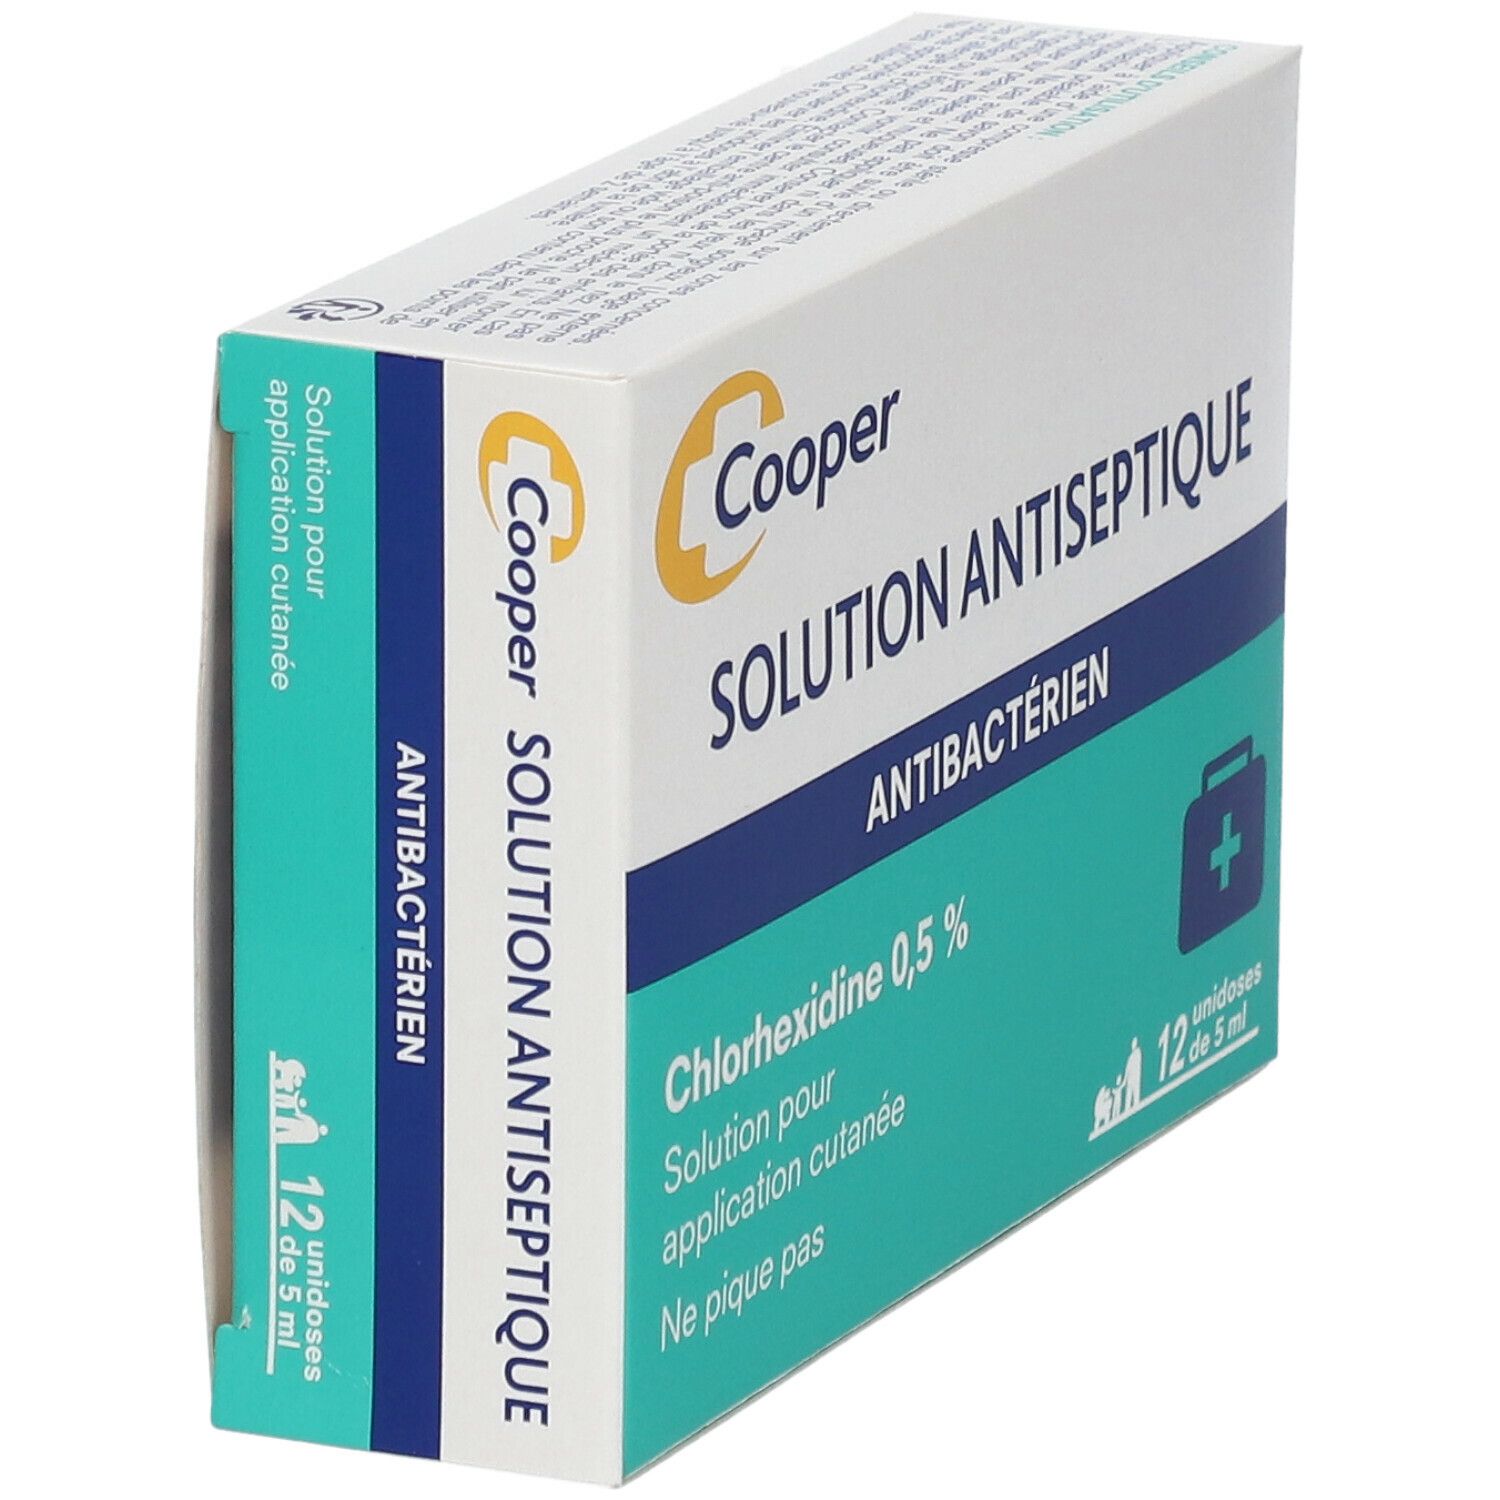 Cooper solution antiseptique - chlorhexidine 0.5%